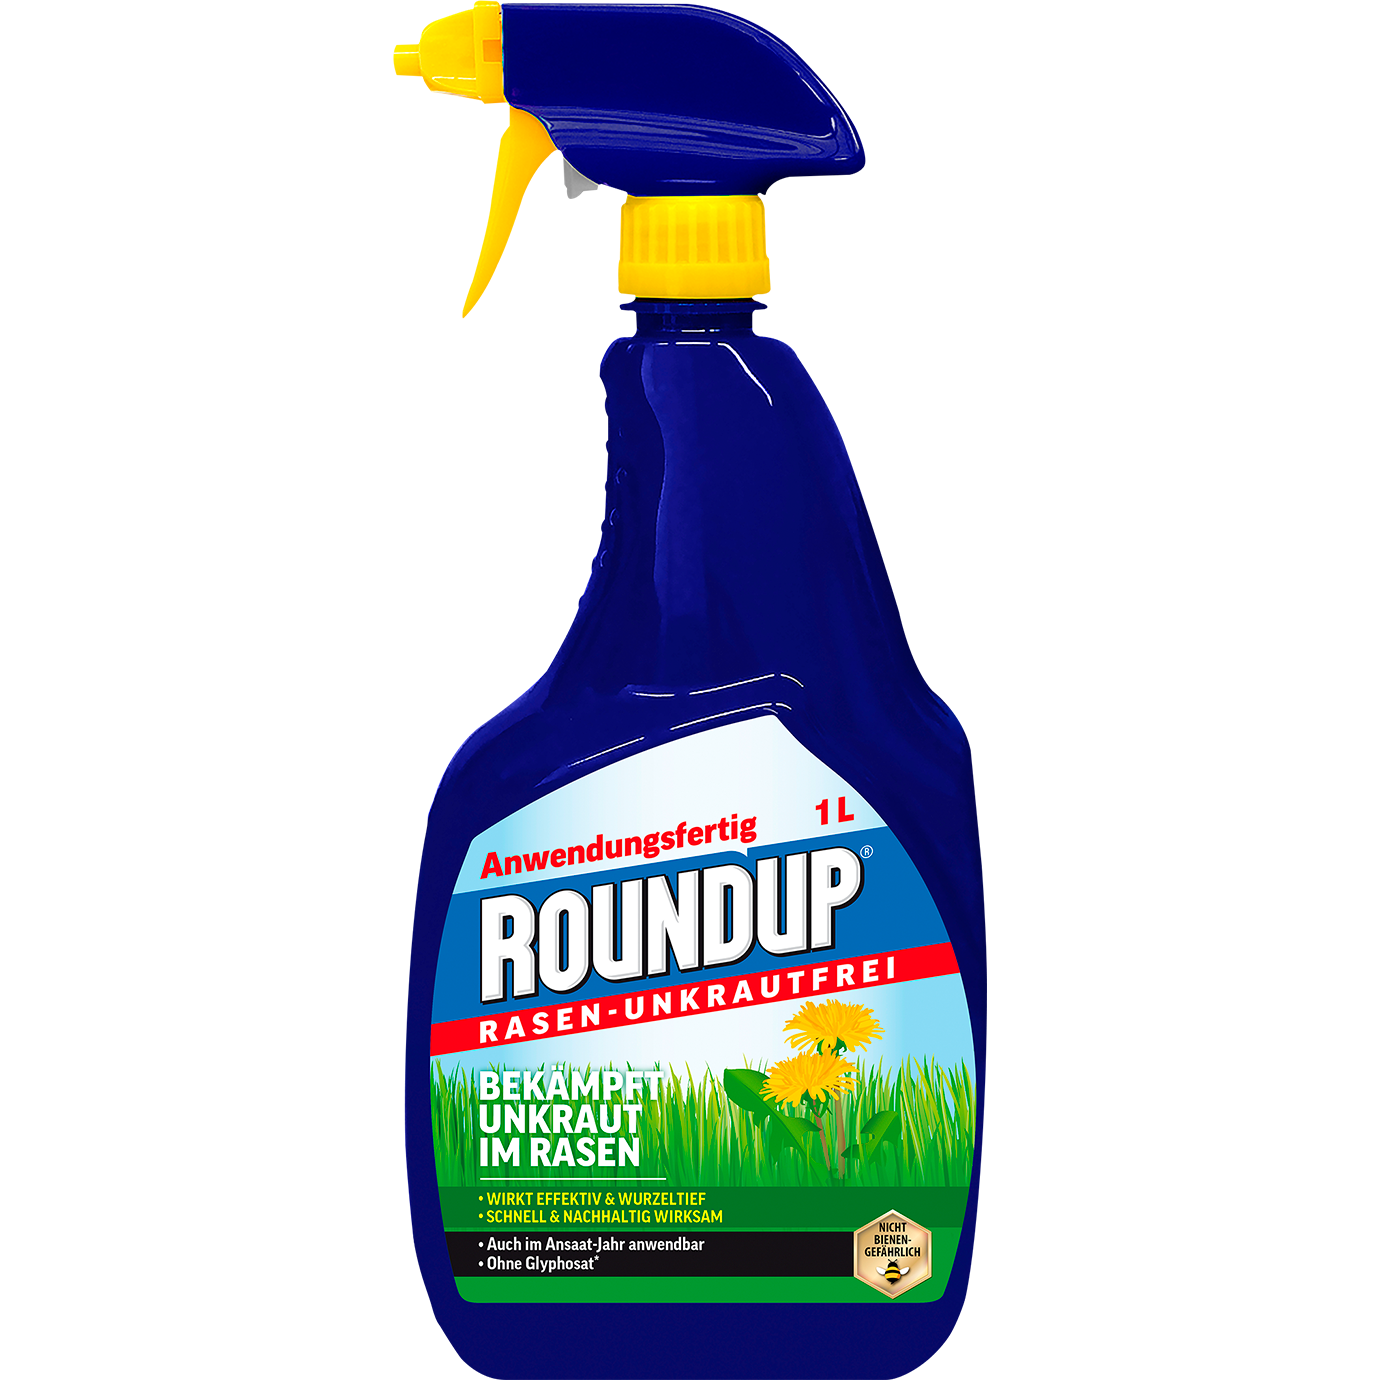 Roundup® Rasen-Unkrautfrei